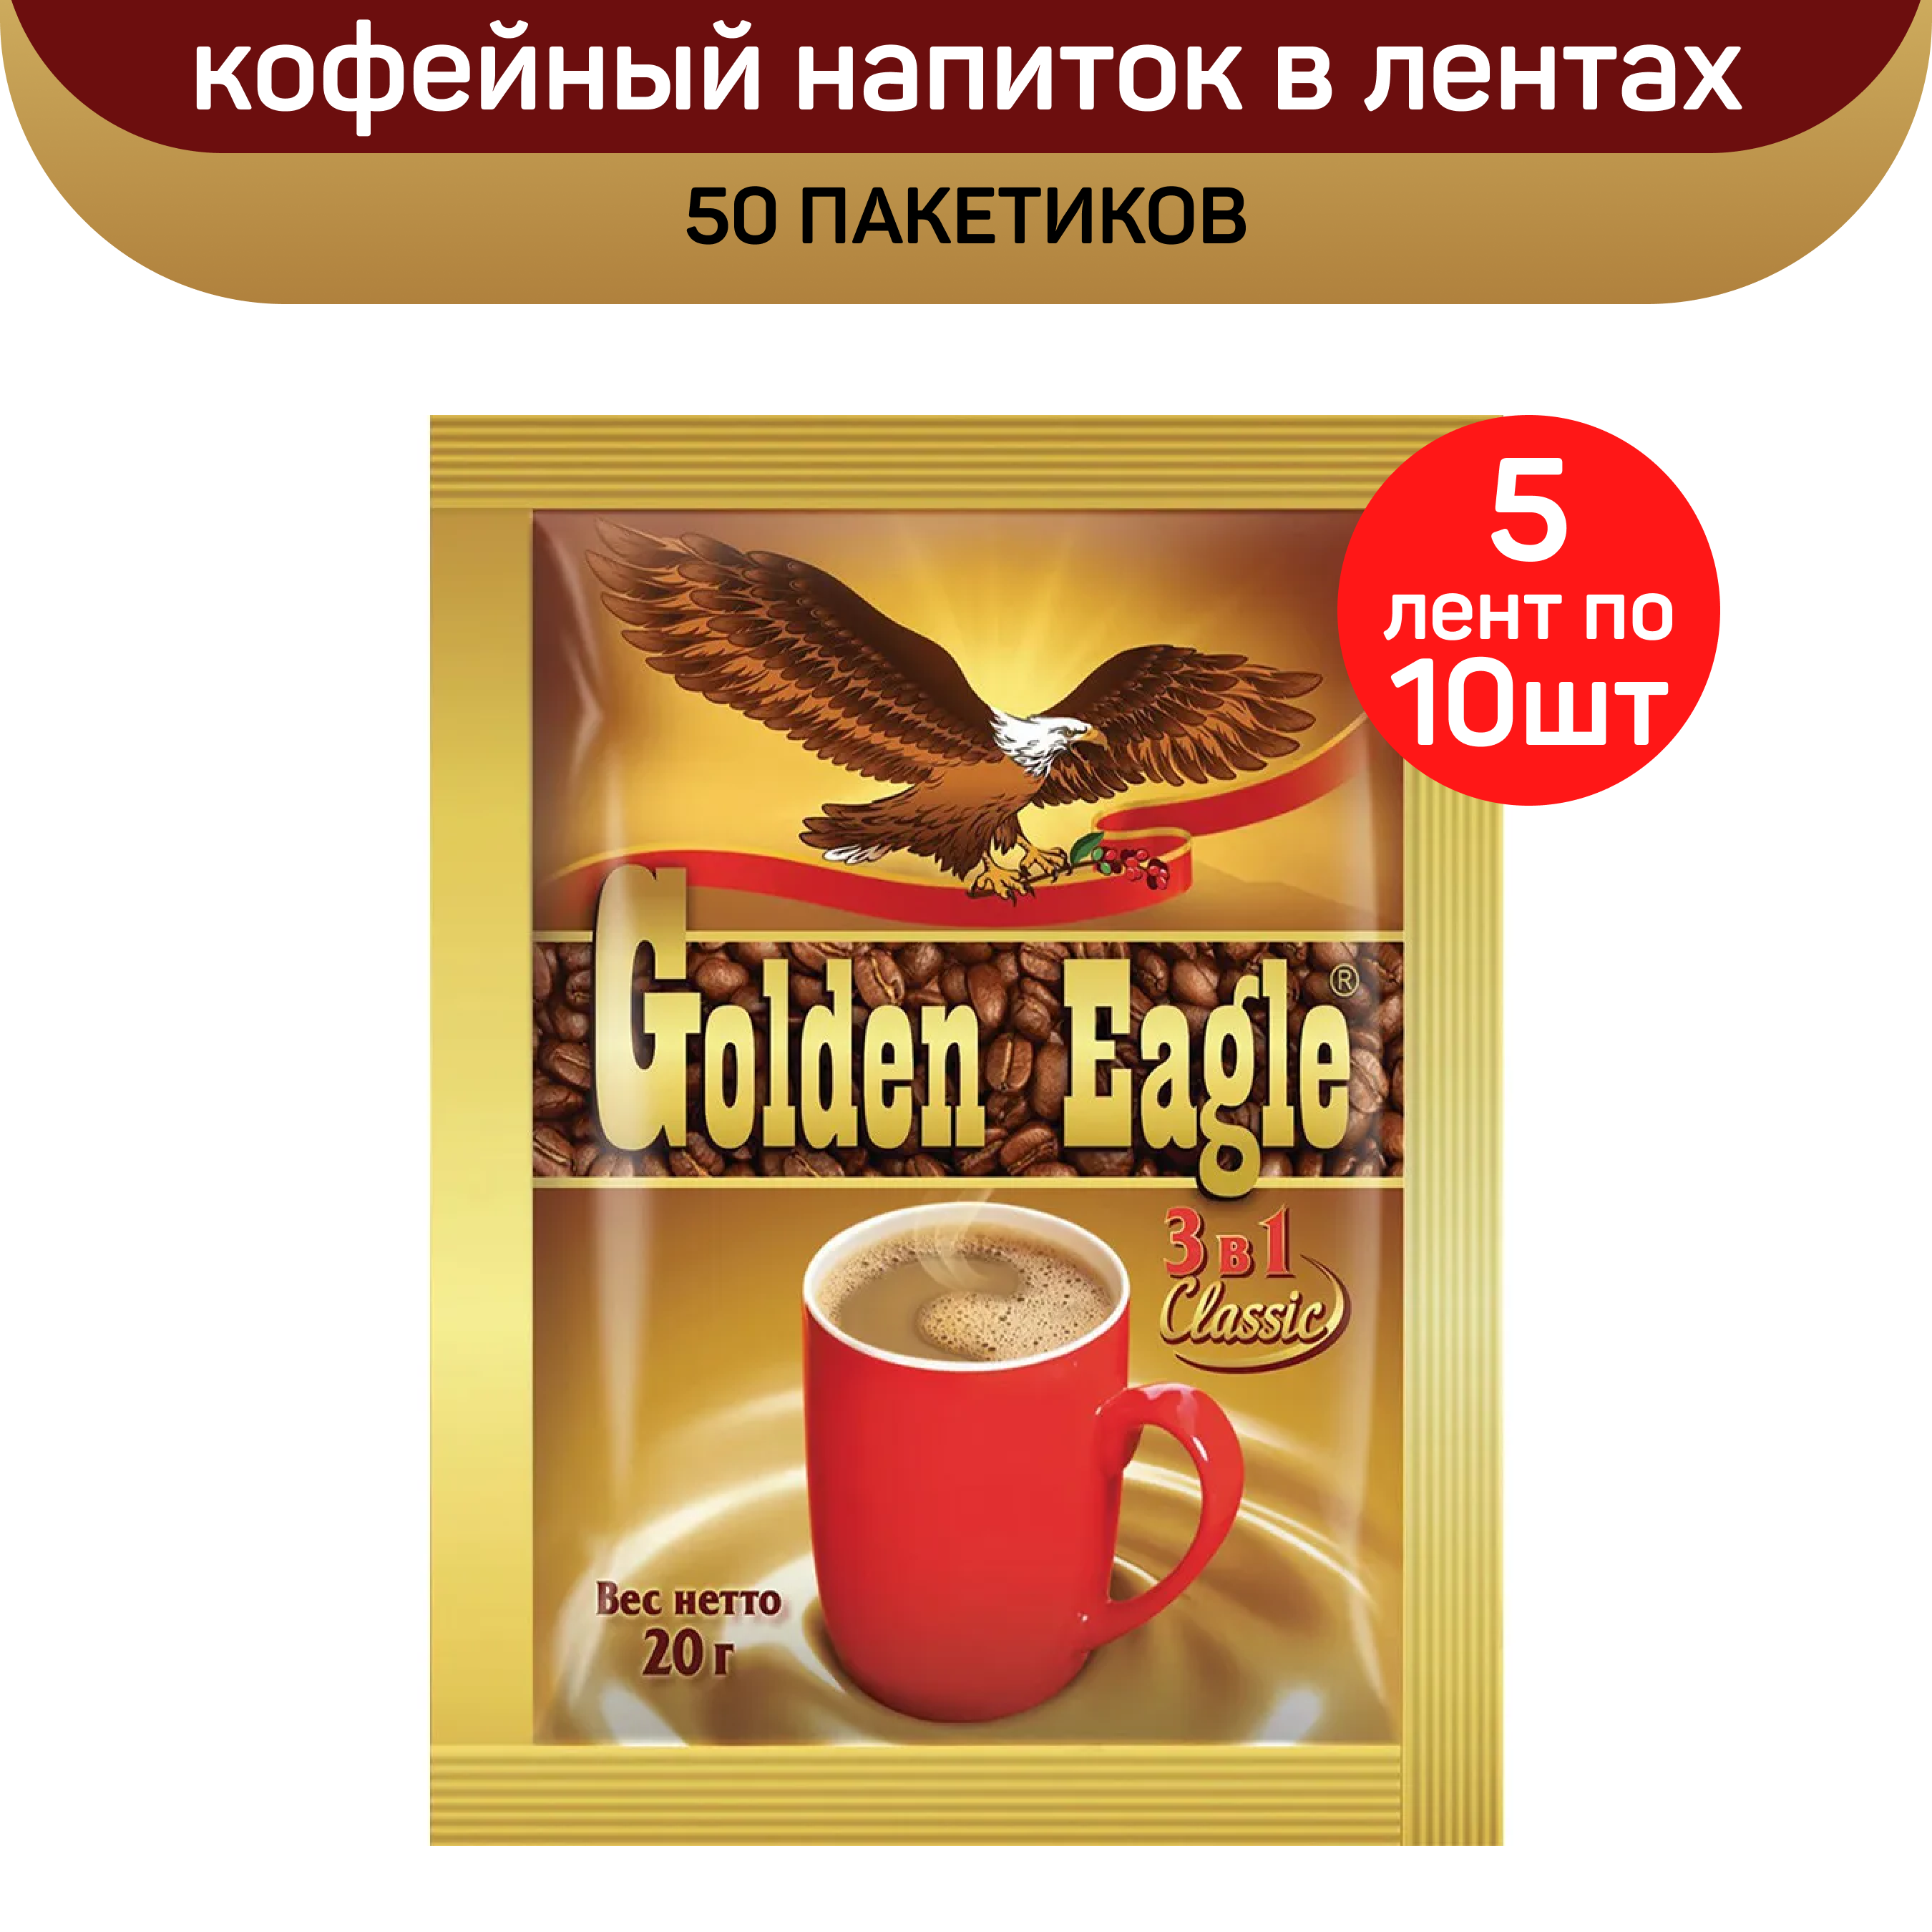 Кофейный напиток Golden Eagle Classic 3 в 1, 20 г, 5 лент по 10 пакетиков